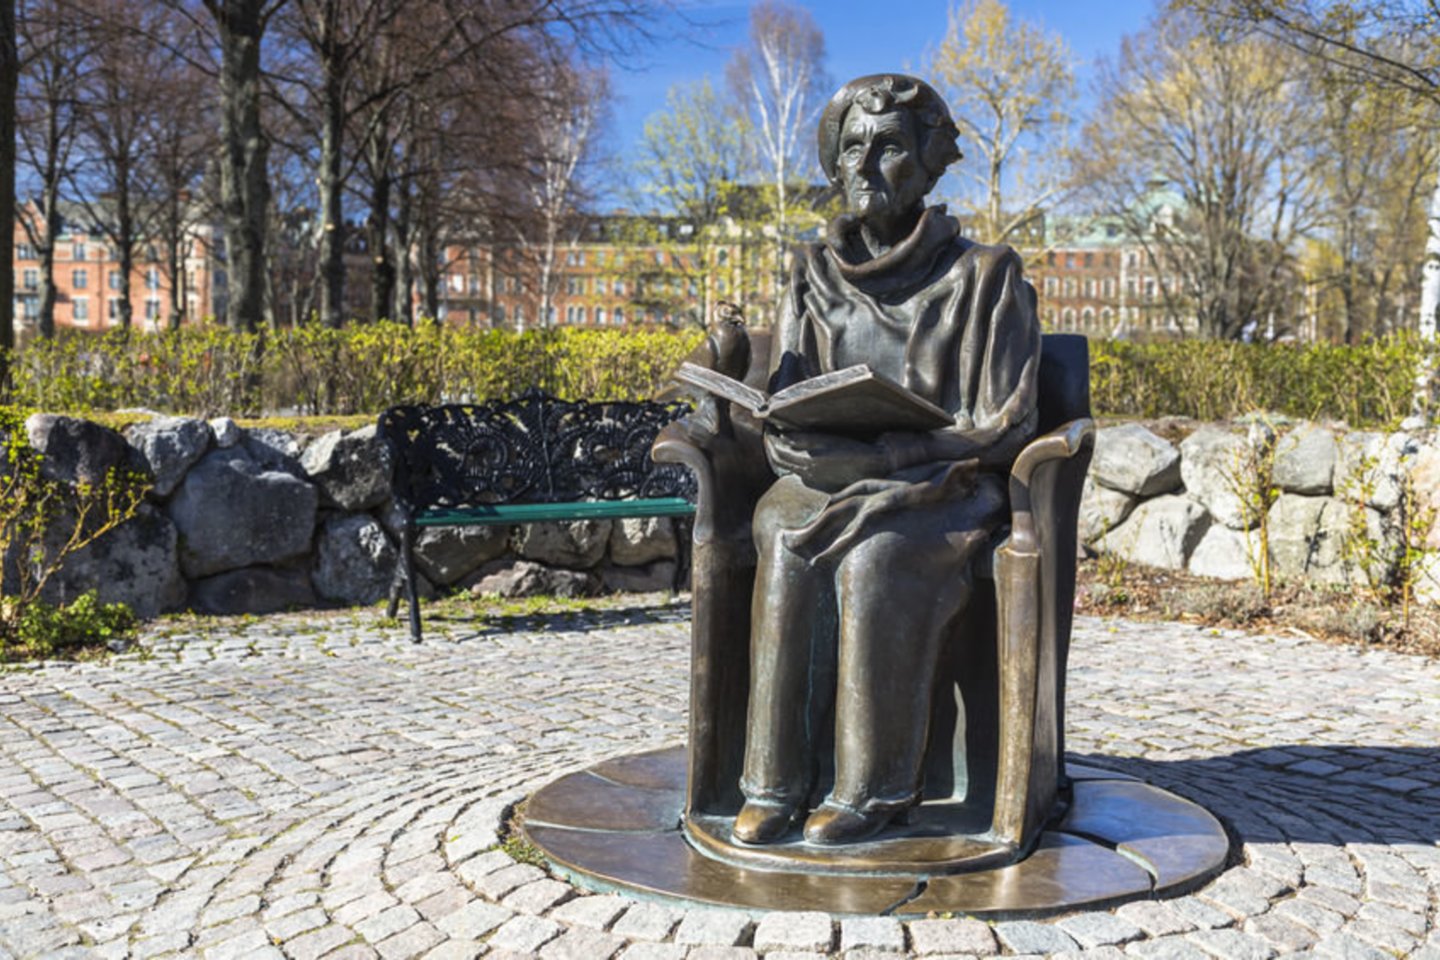 2002 m. mirė švedų rašytoja, knygų apie Pepę Ilgakojinę ir Karlsoną autorė, Anderseno premijos laureatė Astrid Lindgren (94 m.).<br>123rf